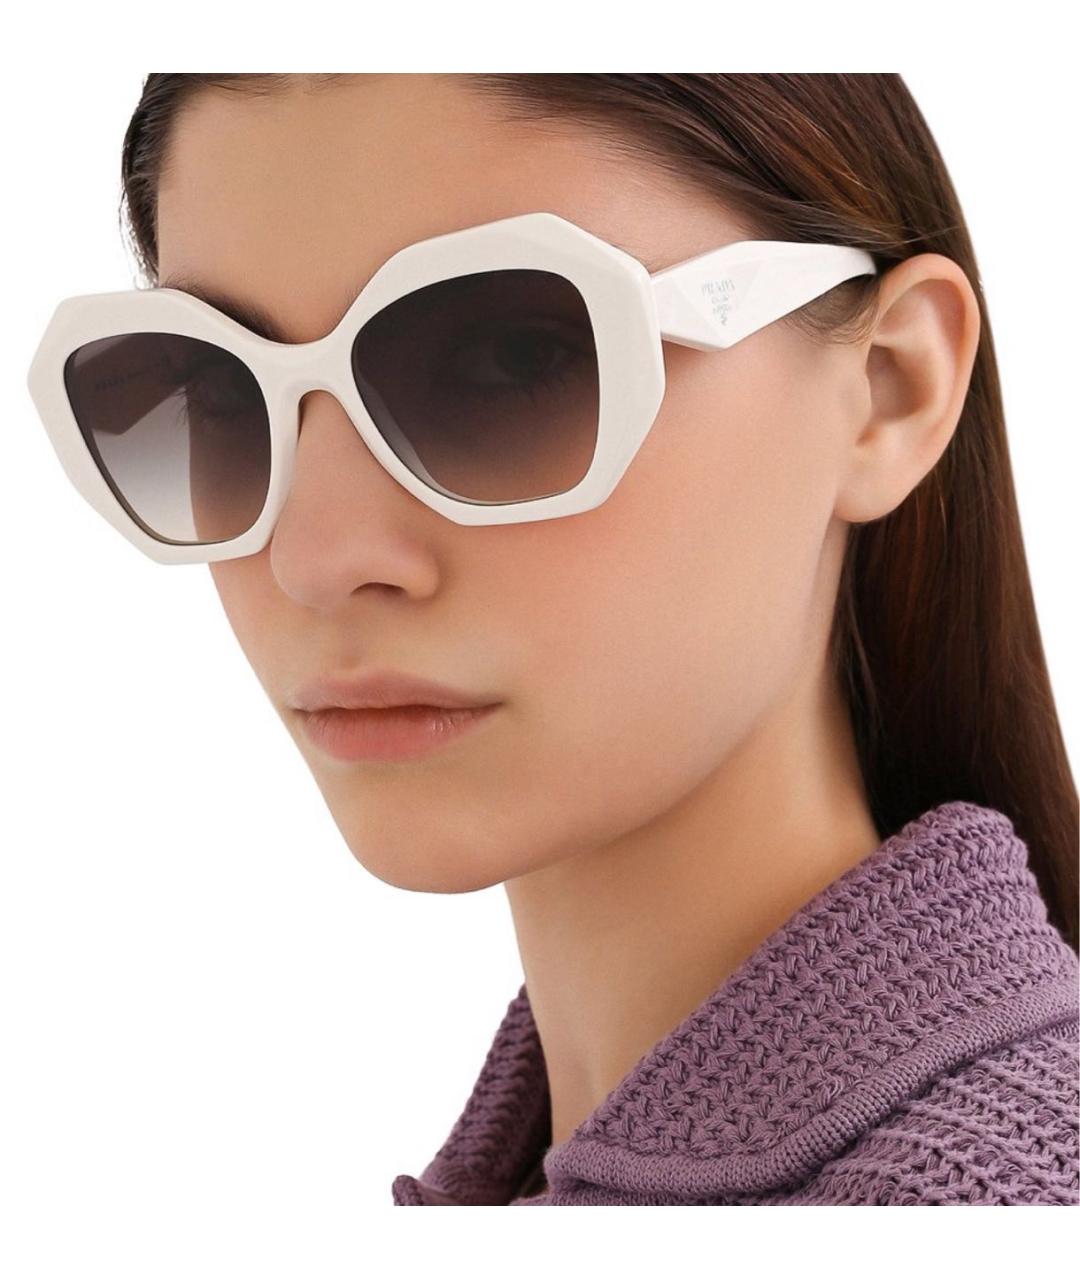 PRADA Белые пластиковые солнцезащитные очки, фото 3